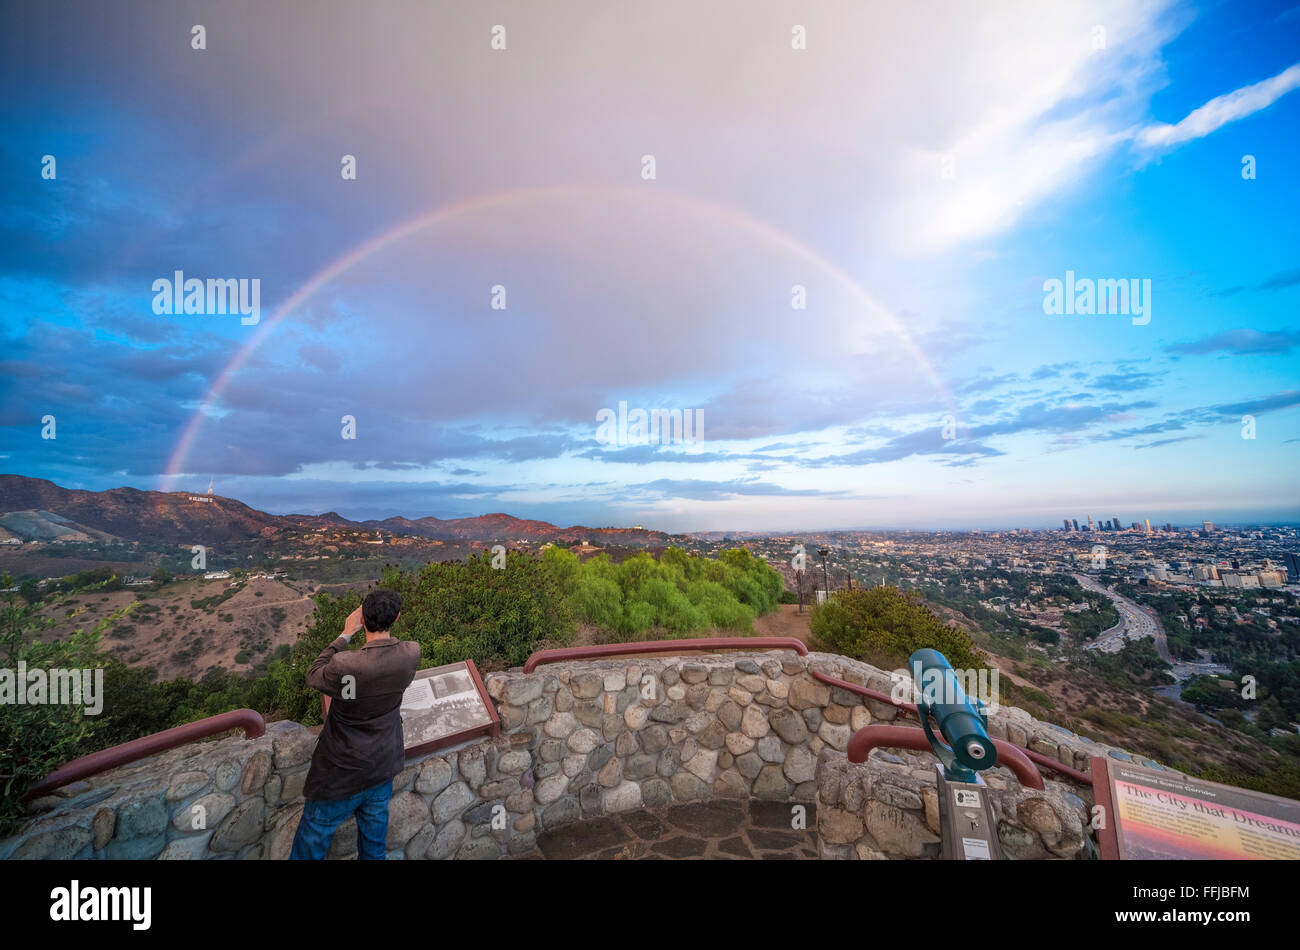 Arco iris sobre cartel de Hollywood y Los Angeles. Vista panorámica desde el Hollywood Bowl pasan por alto. Con arco iris y nubes de tormenta de lluvia. Foto de stock